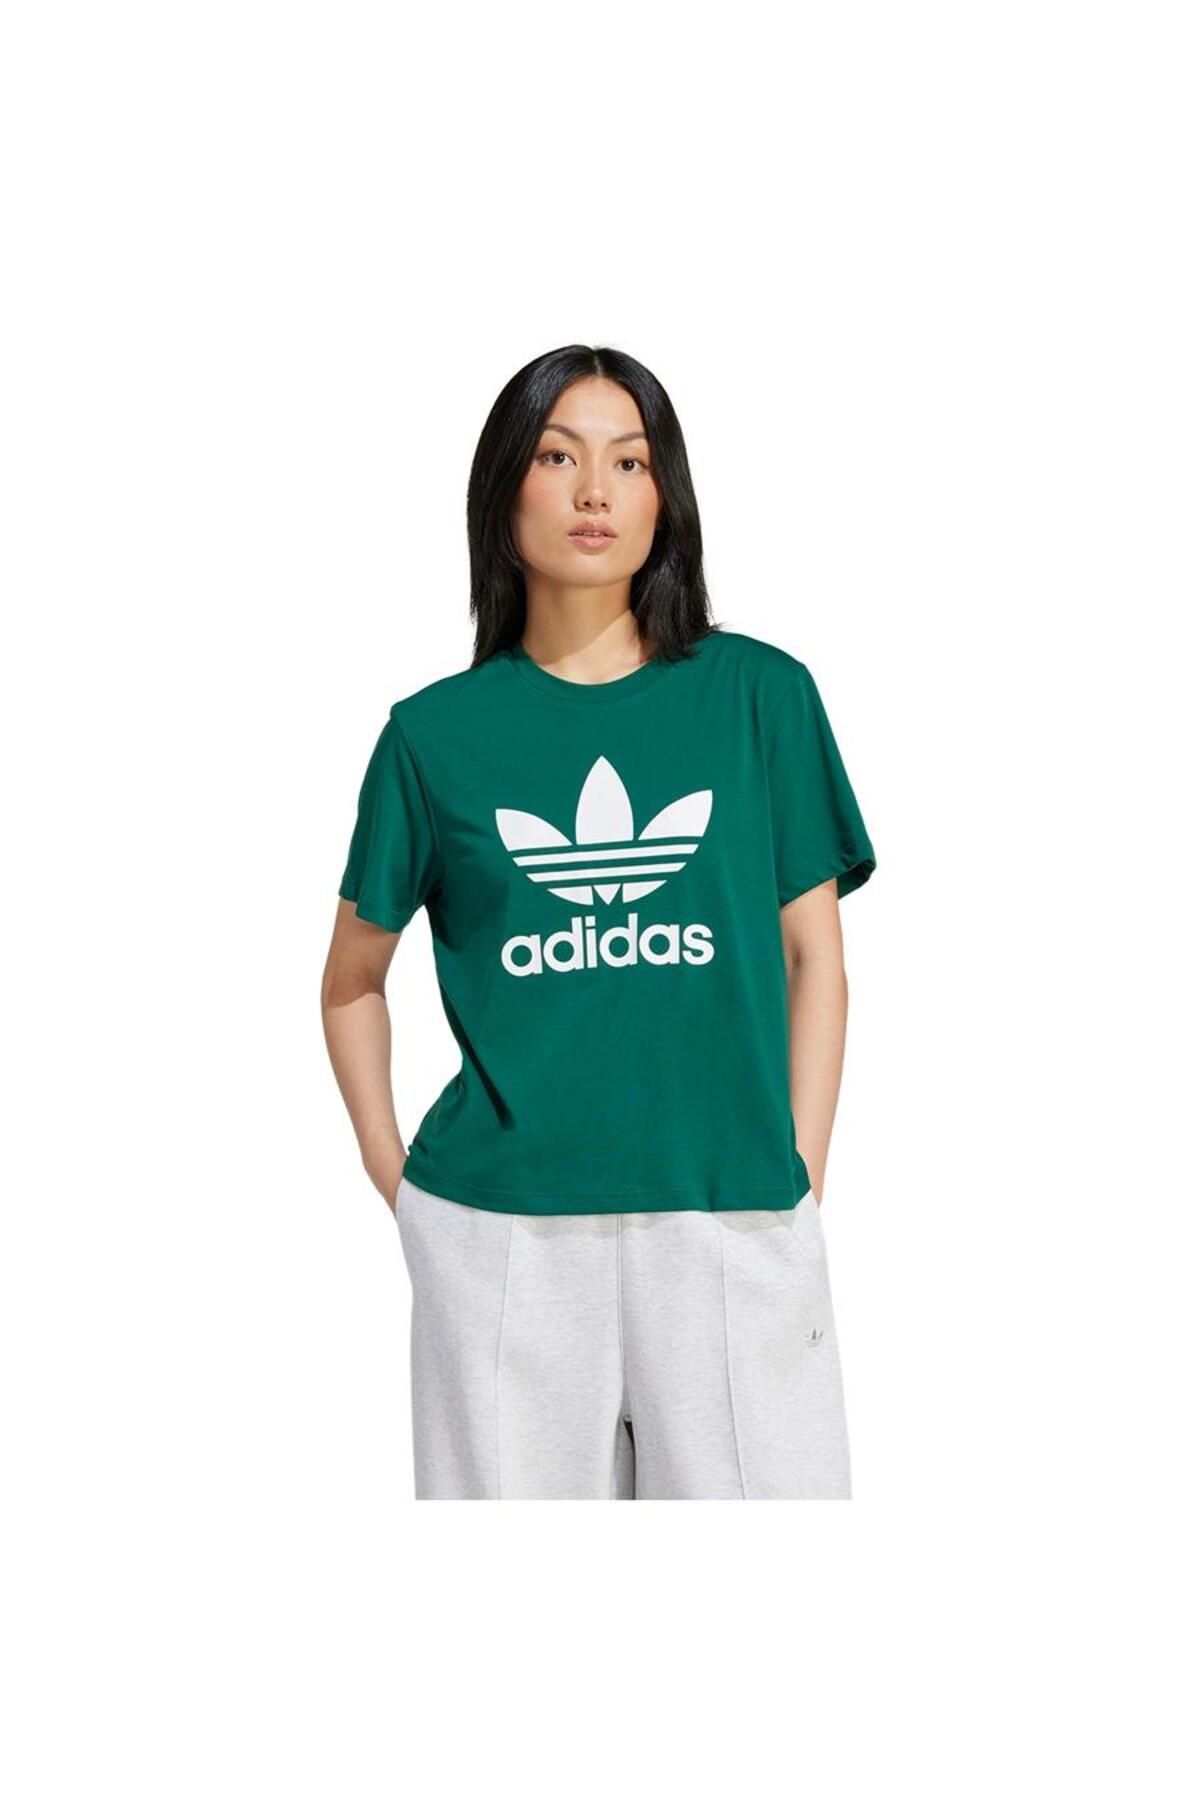 adidas In8434 Trfl Tee Boxy Kadın T-shirt